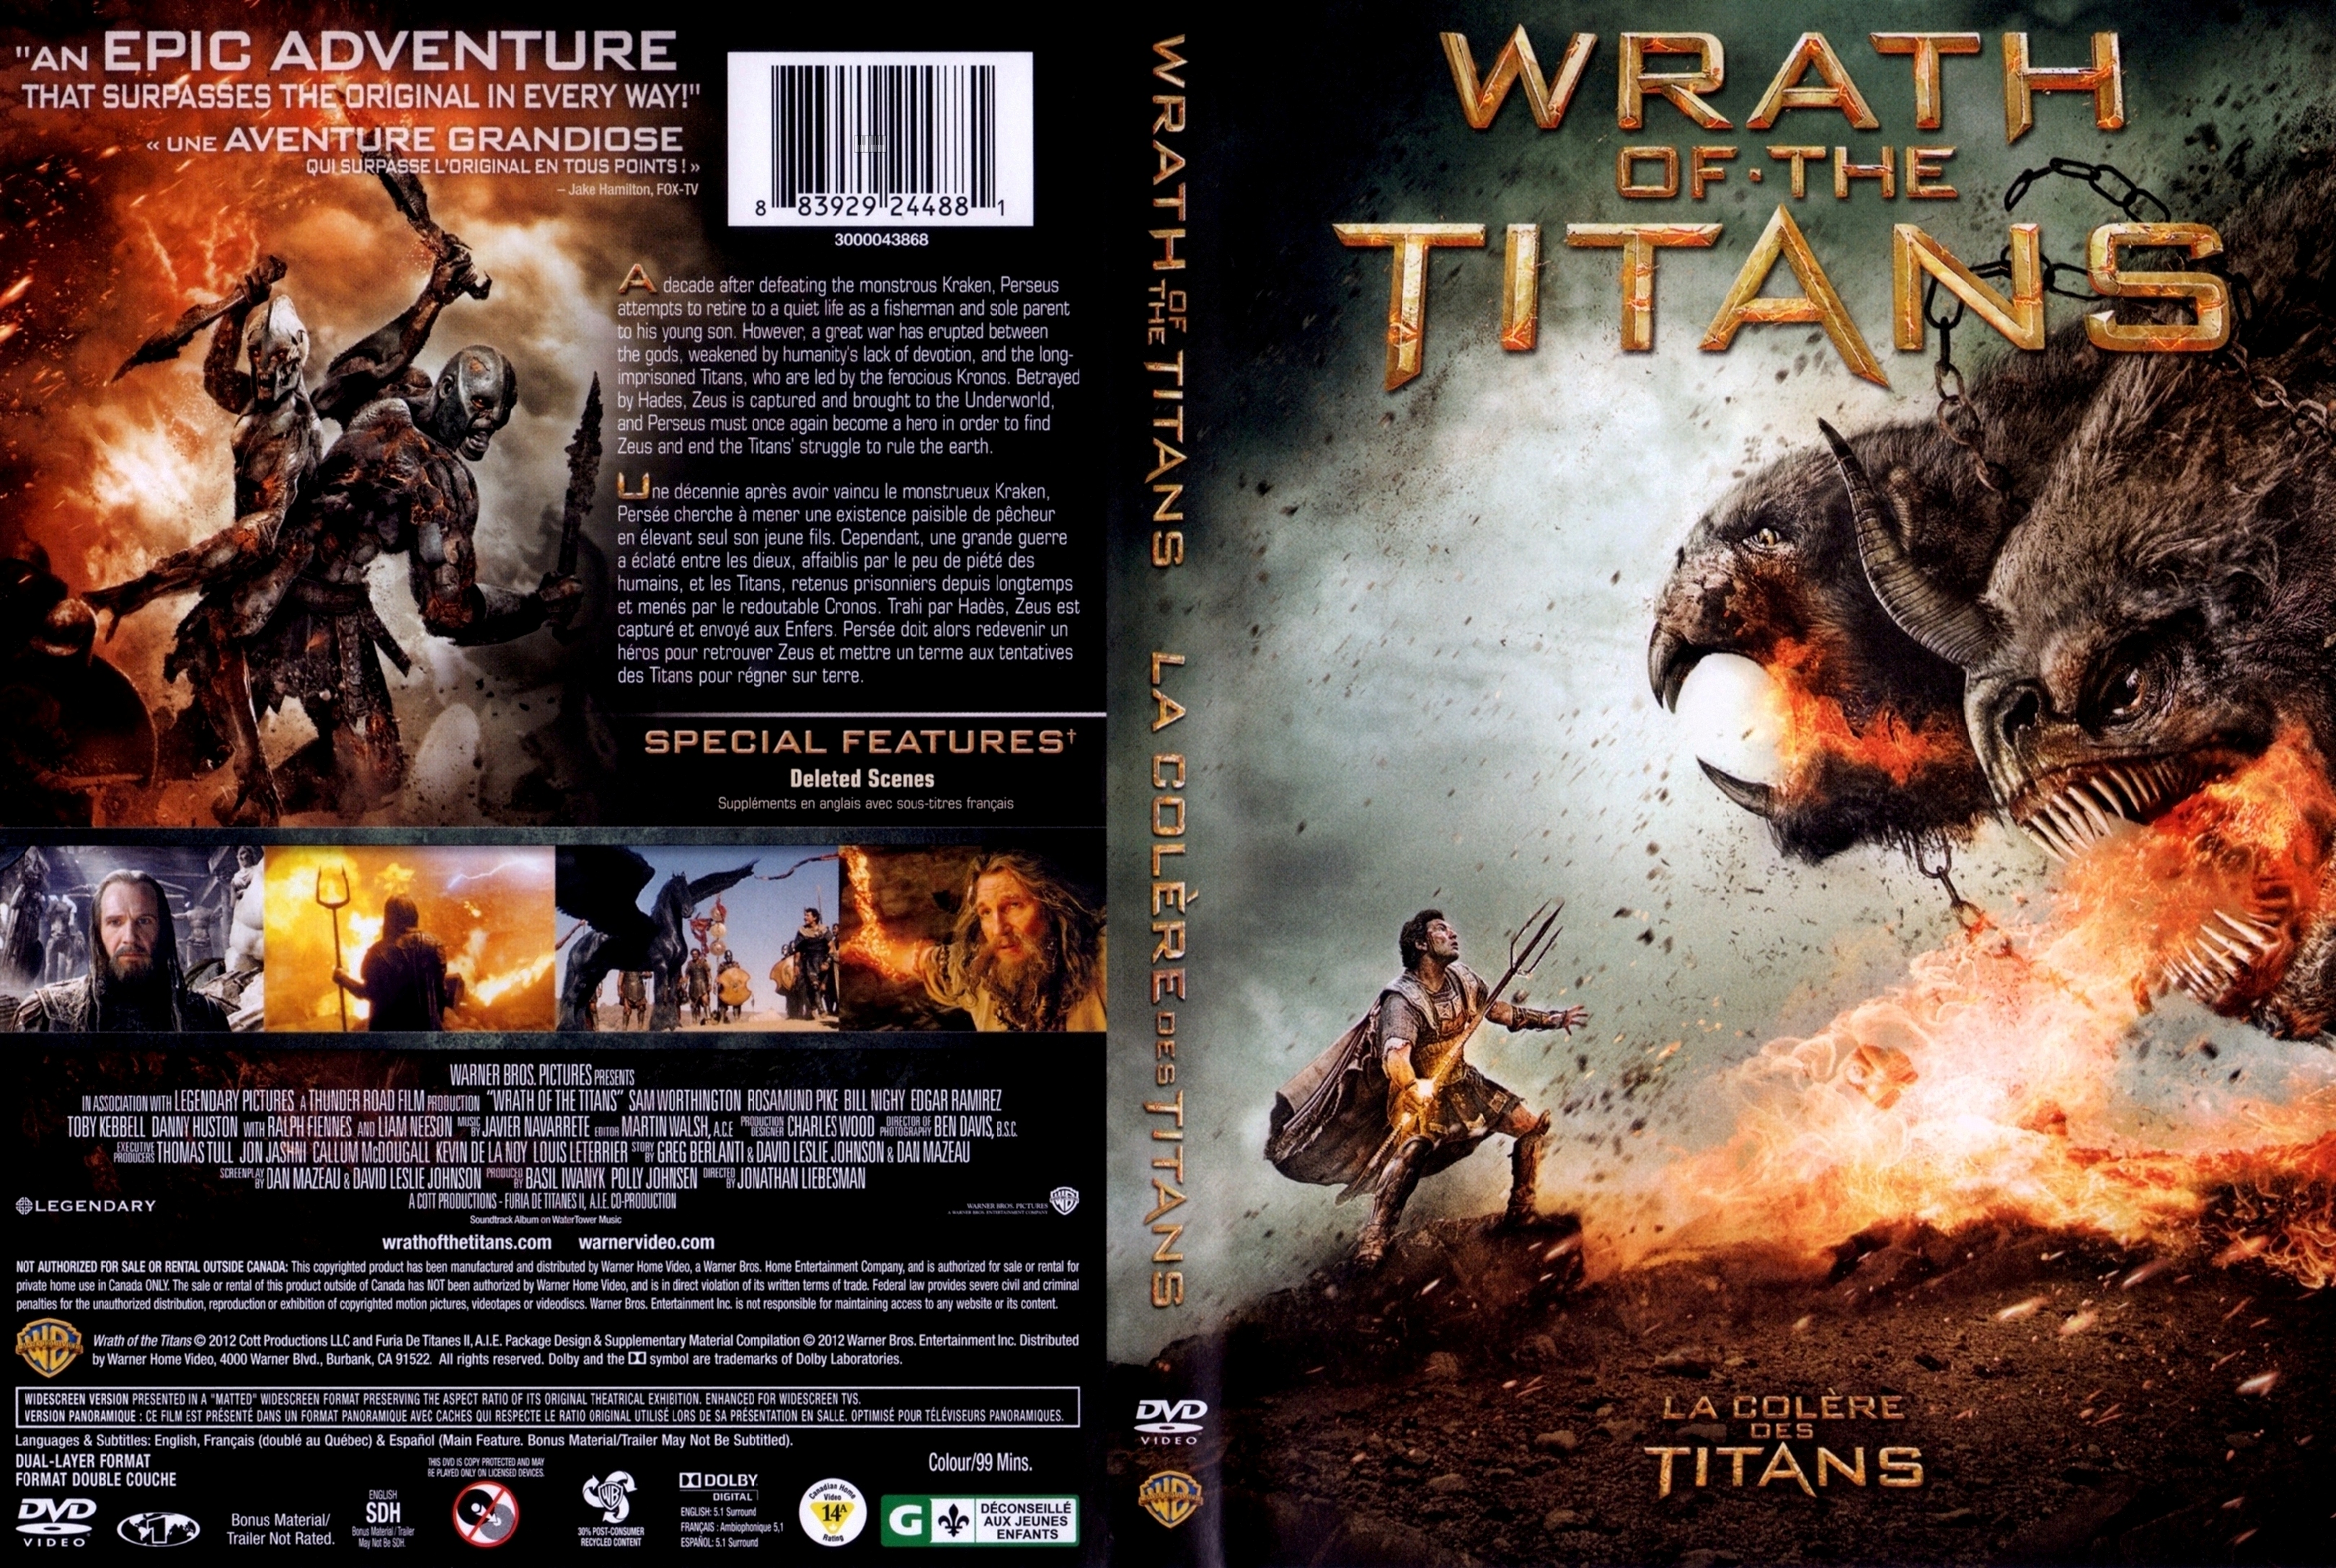 Jaquette DVD La colere des titans - Wrath of the titans (Canadienne)